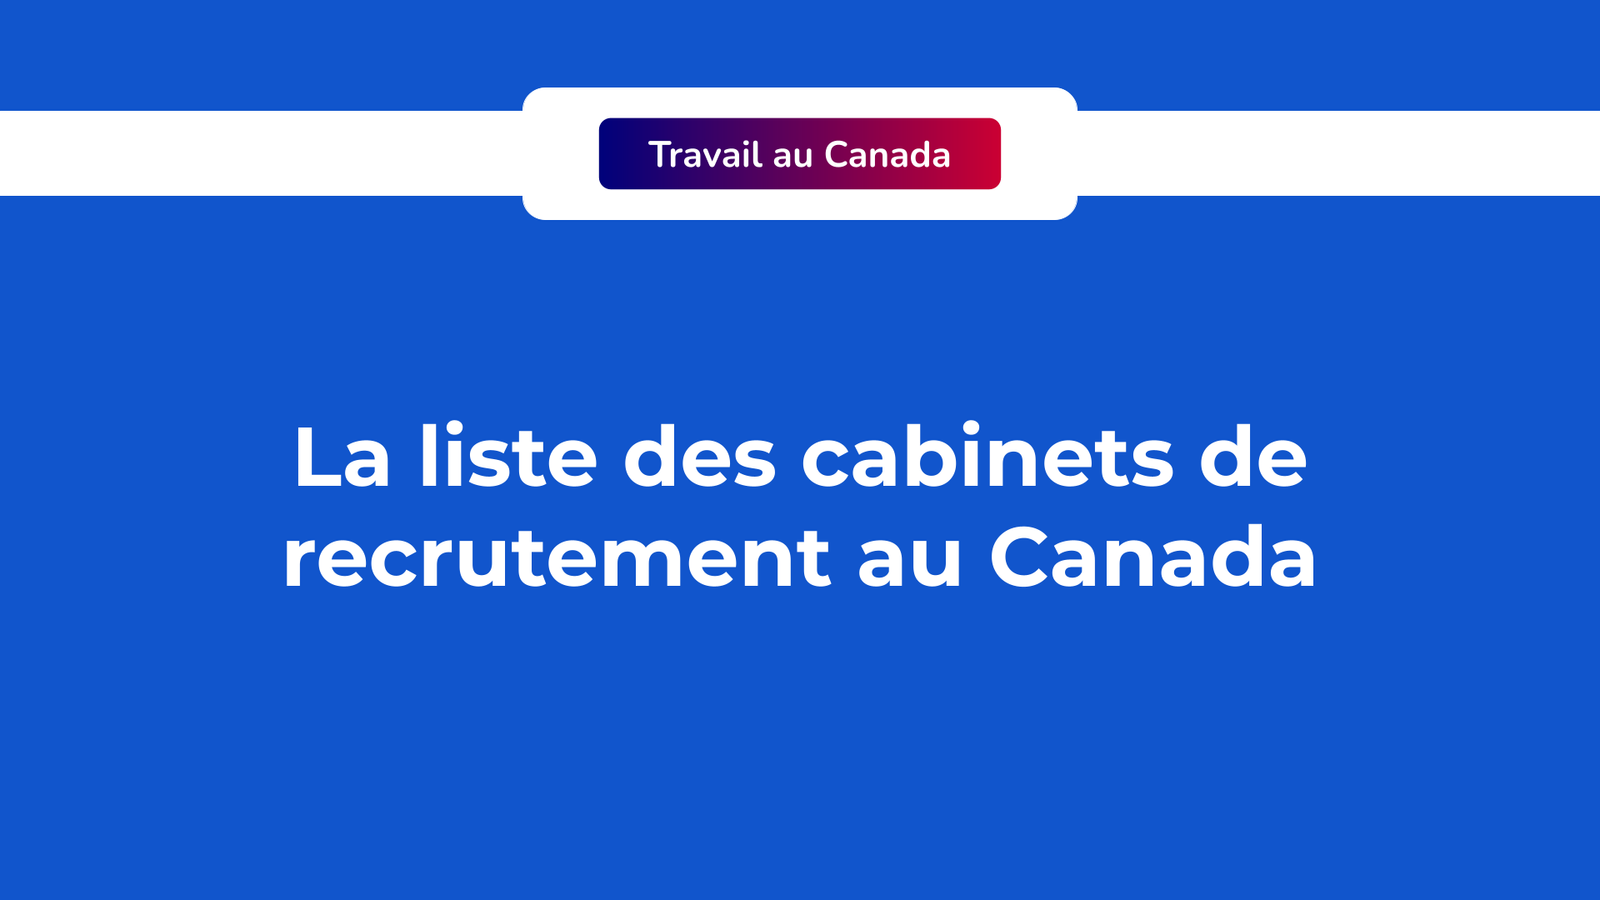 Cabinets de recrutement au Canada